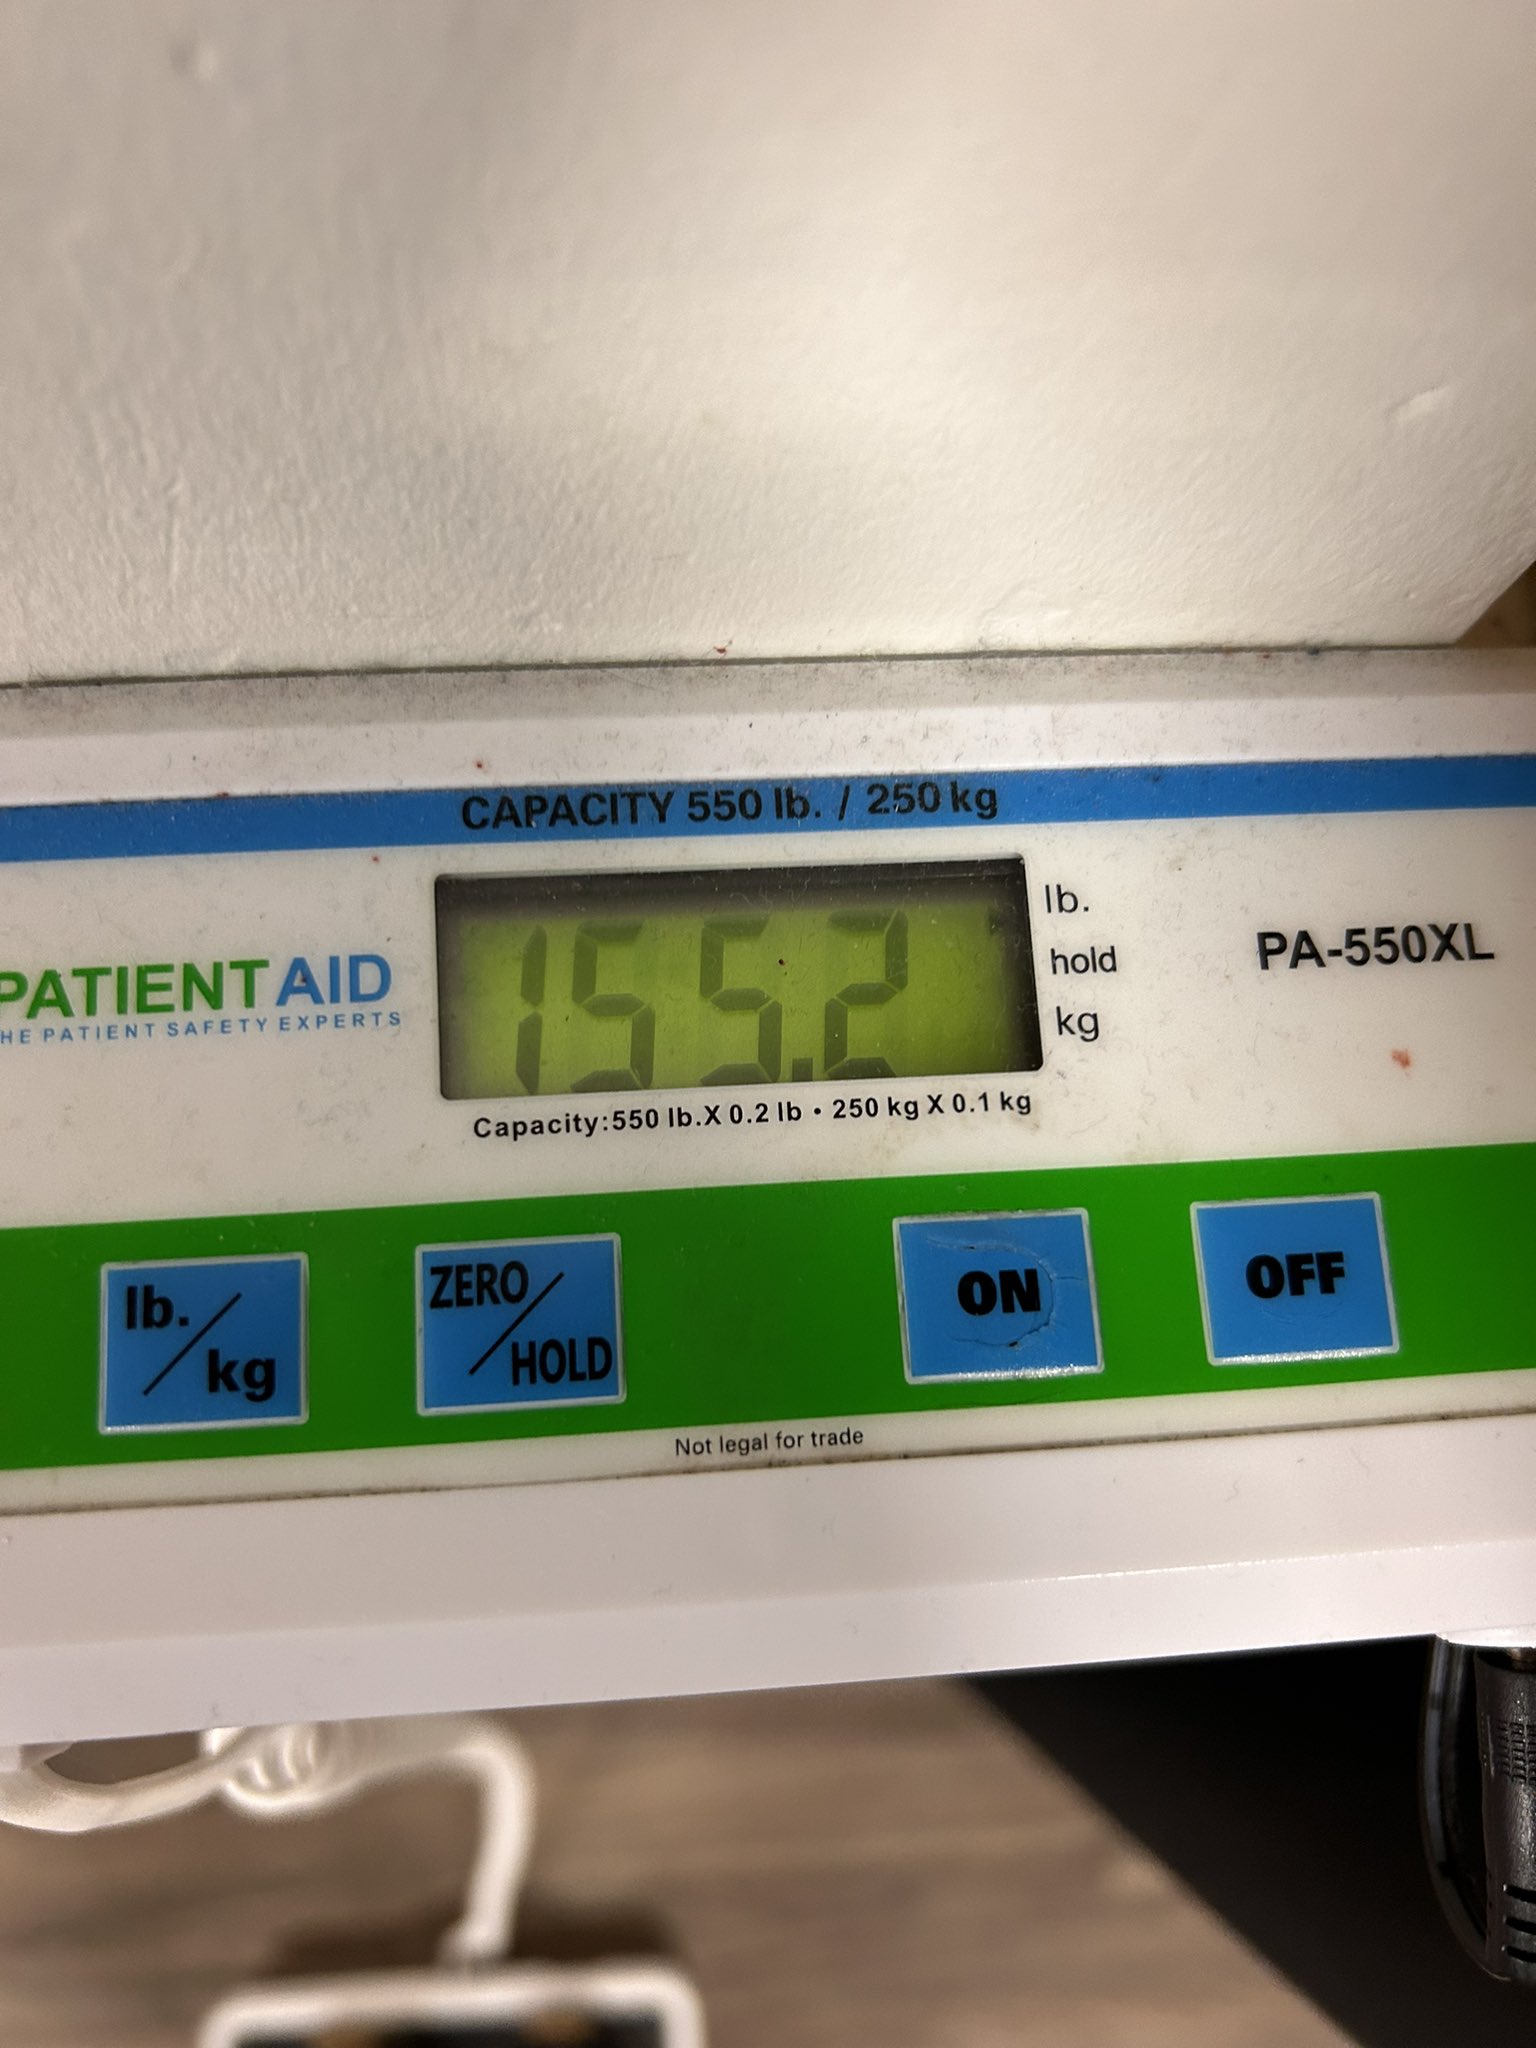 PA-550XL  Patient Aid